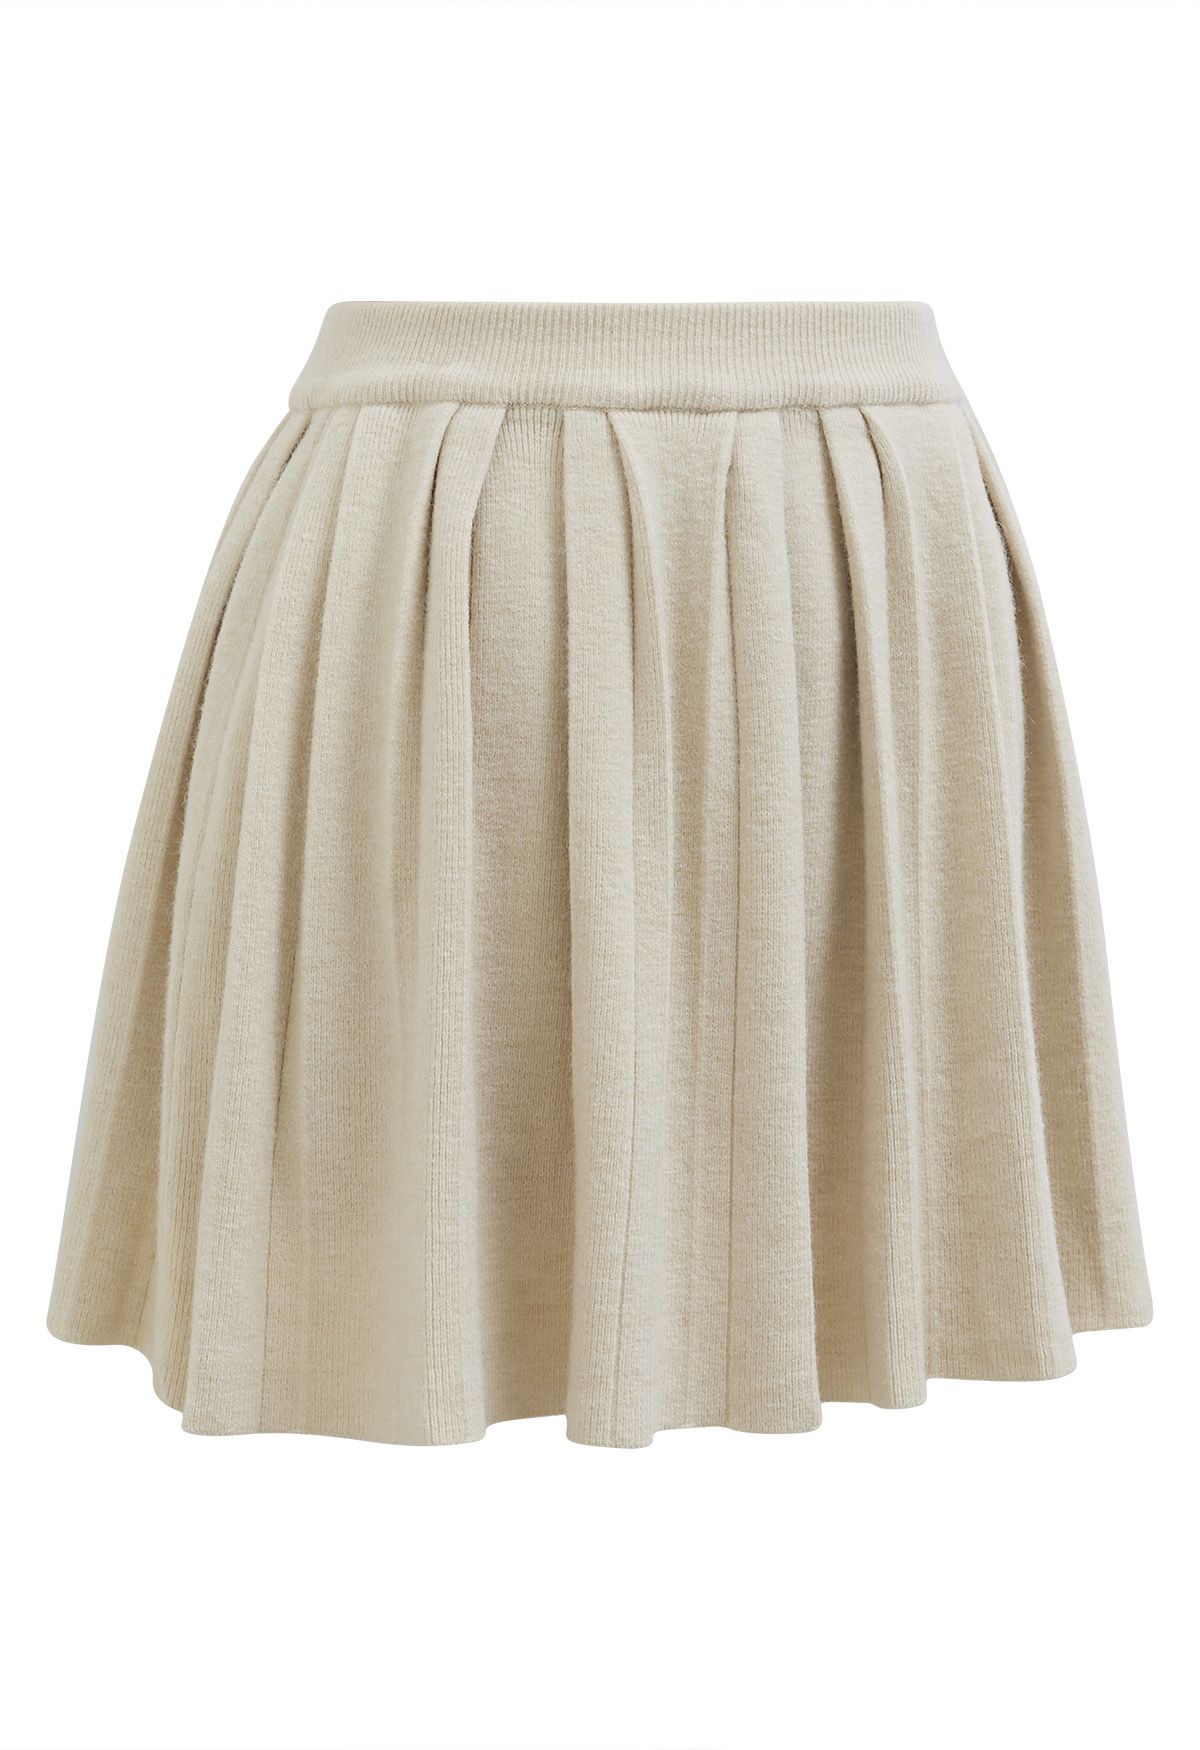 Minifalda plisada con cintura elástica en color crema